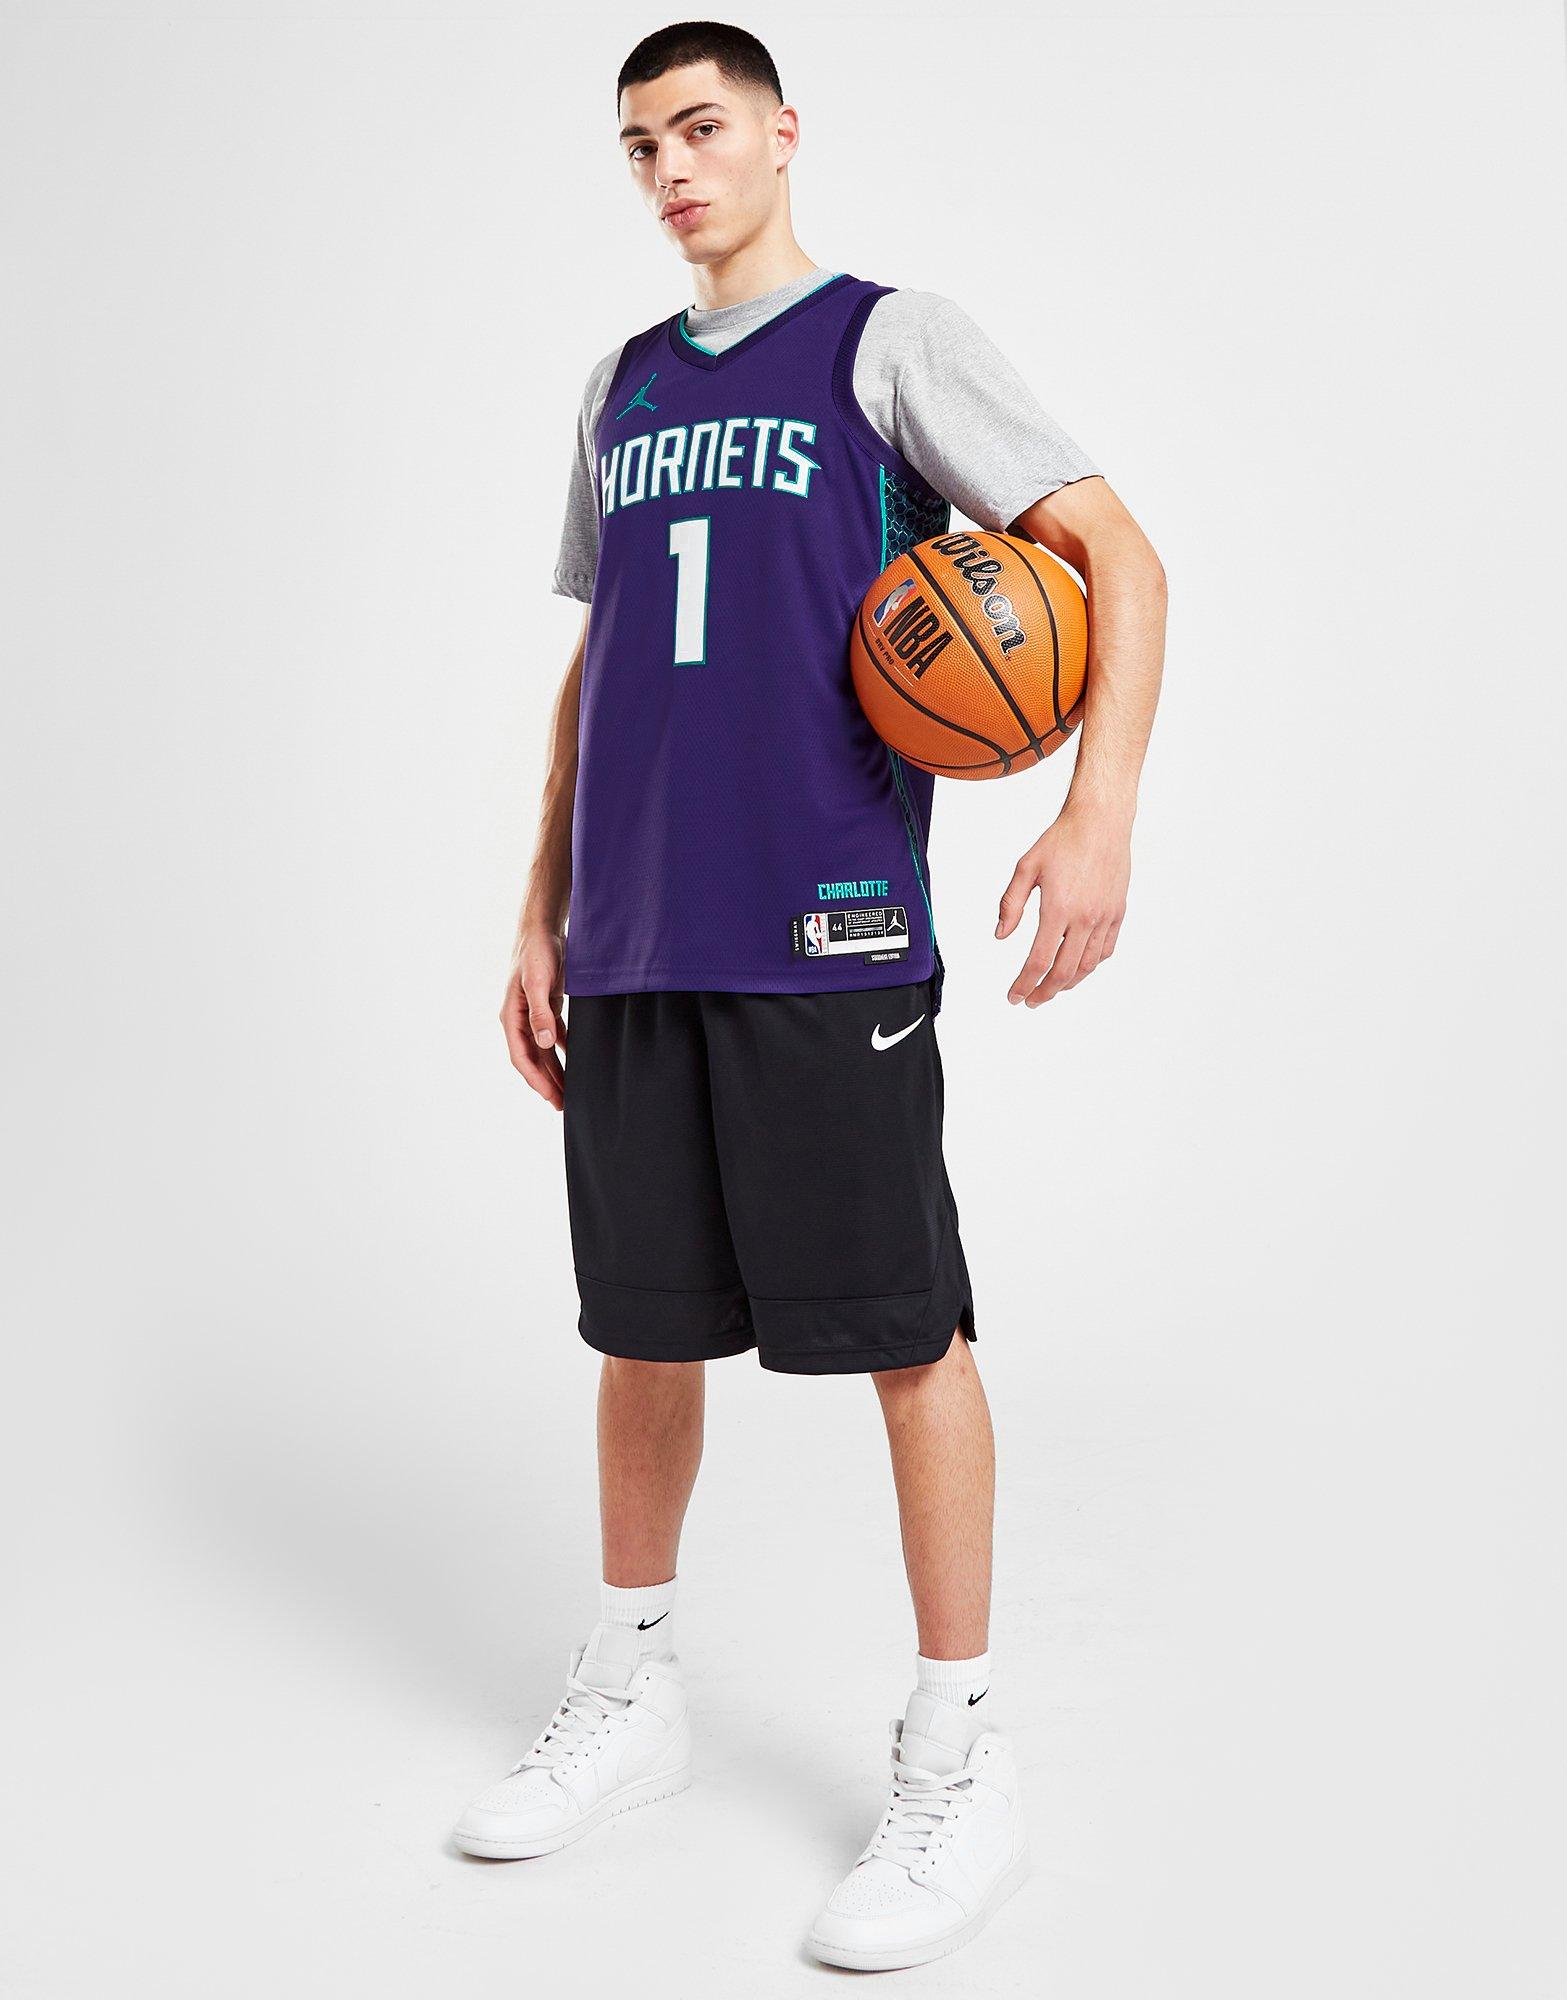 Charlotte Hornets NBA Jerseys, Charlotte Hornets Basketball